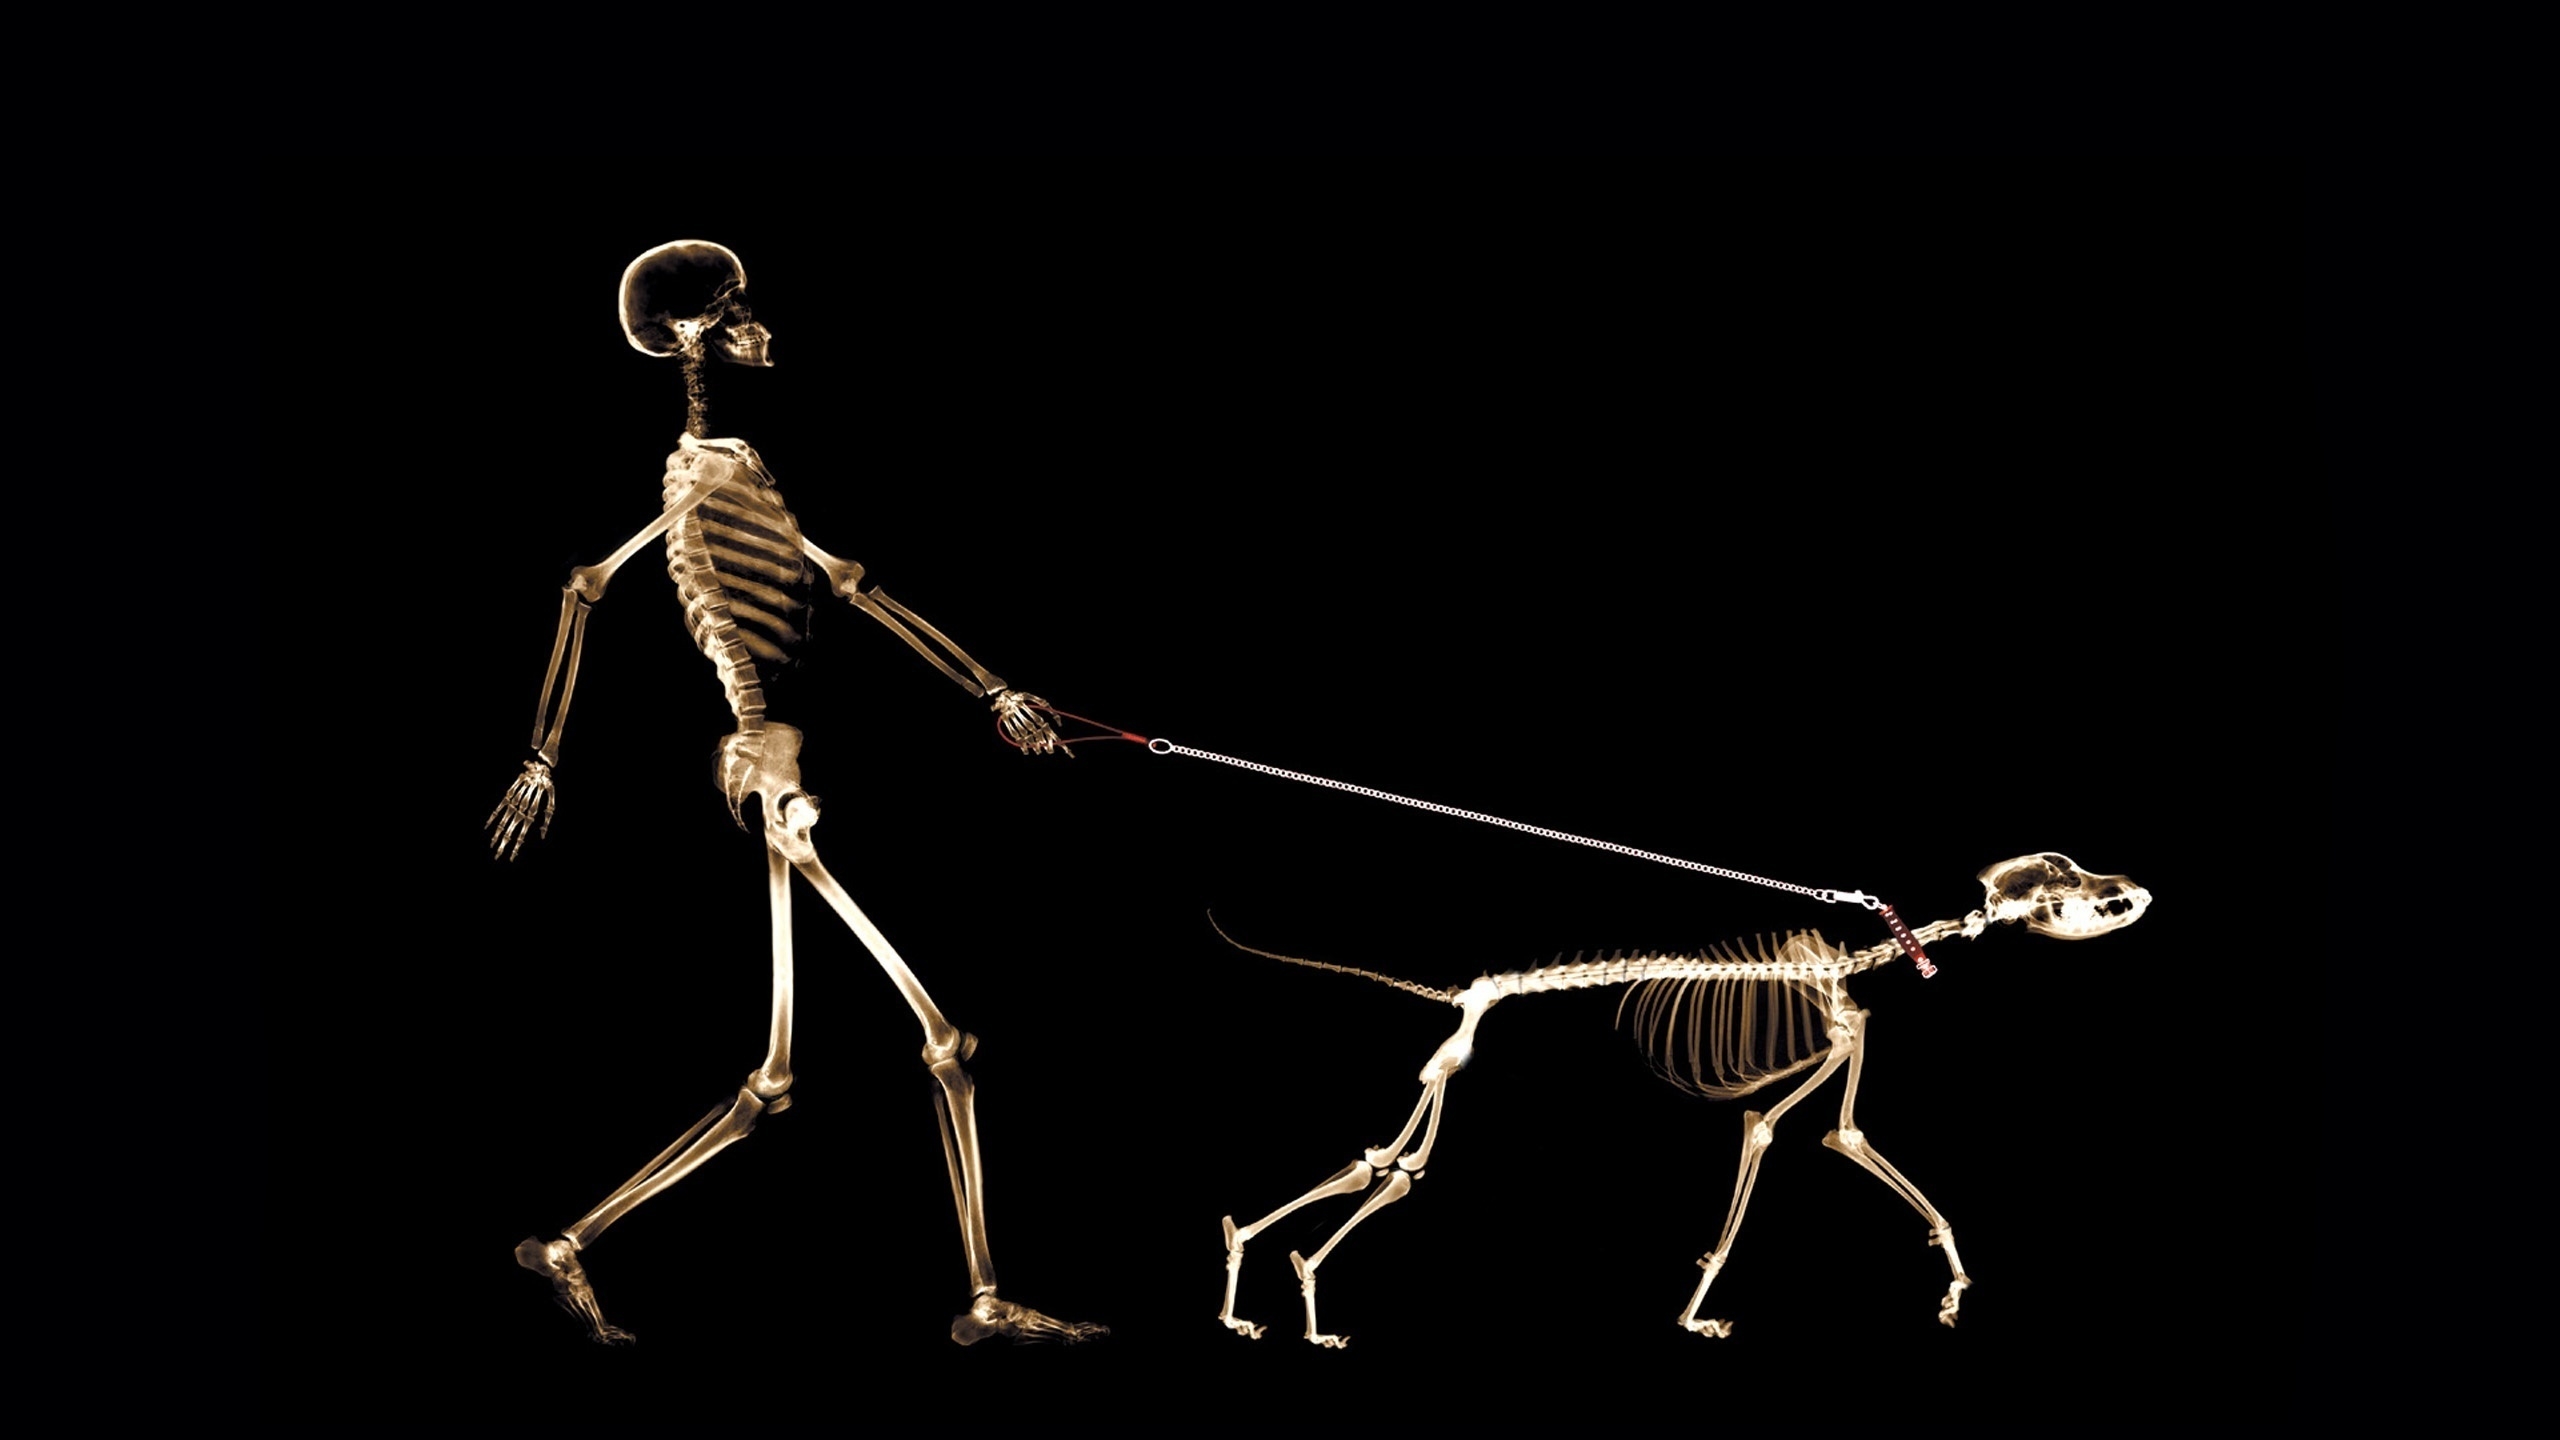 Skeletons Walking for 2560x1440 HDTV resolution